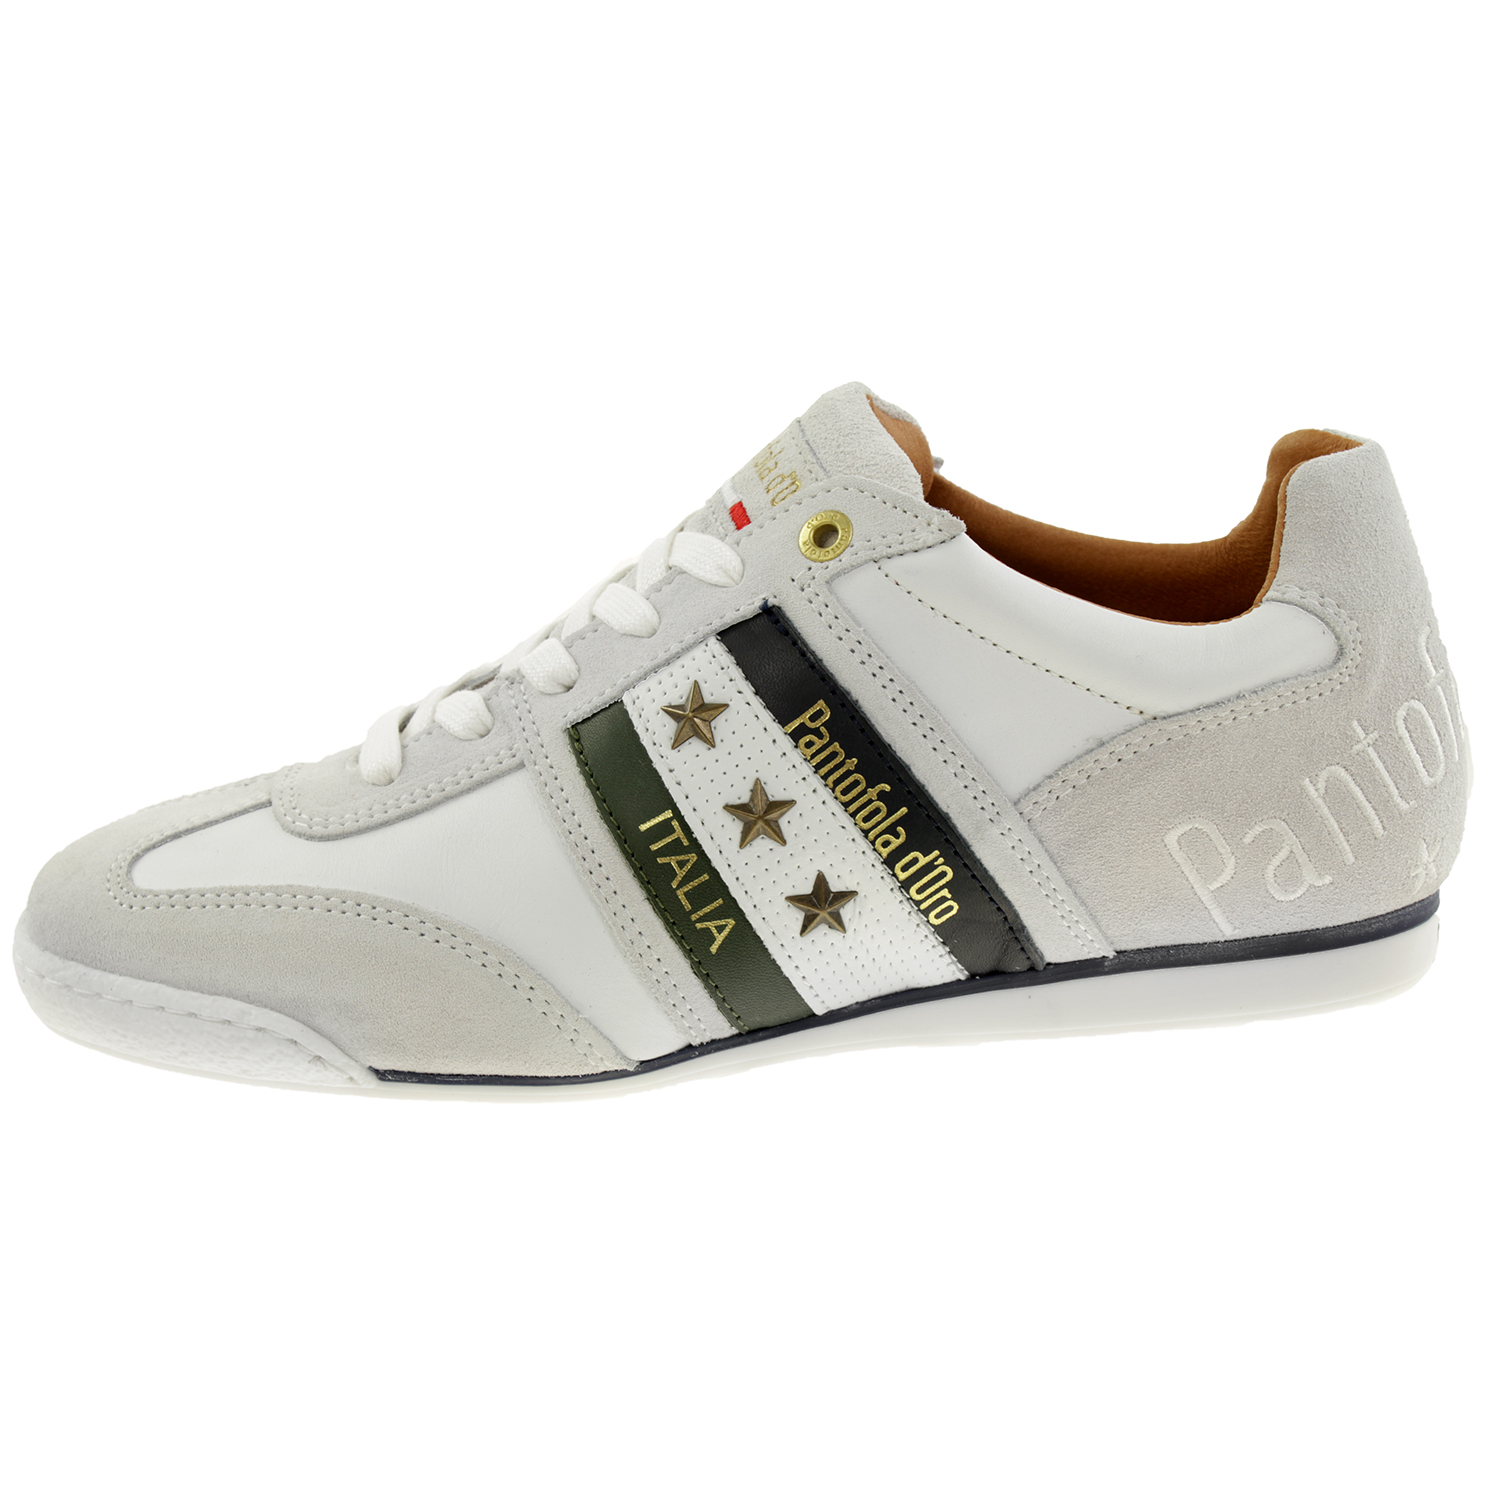 Pantofola d' Oro IMOLA UOMO LOW Herren Leder Sneaker 10213035 Weiß